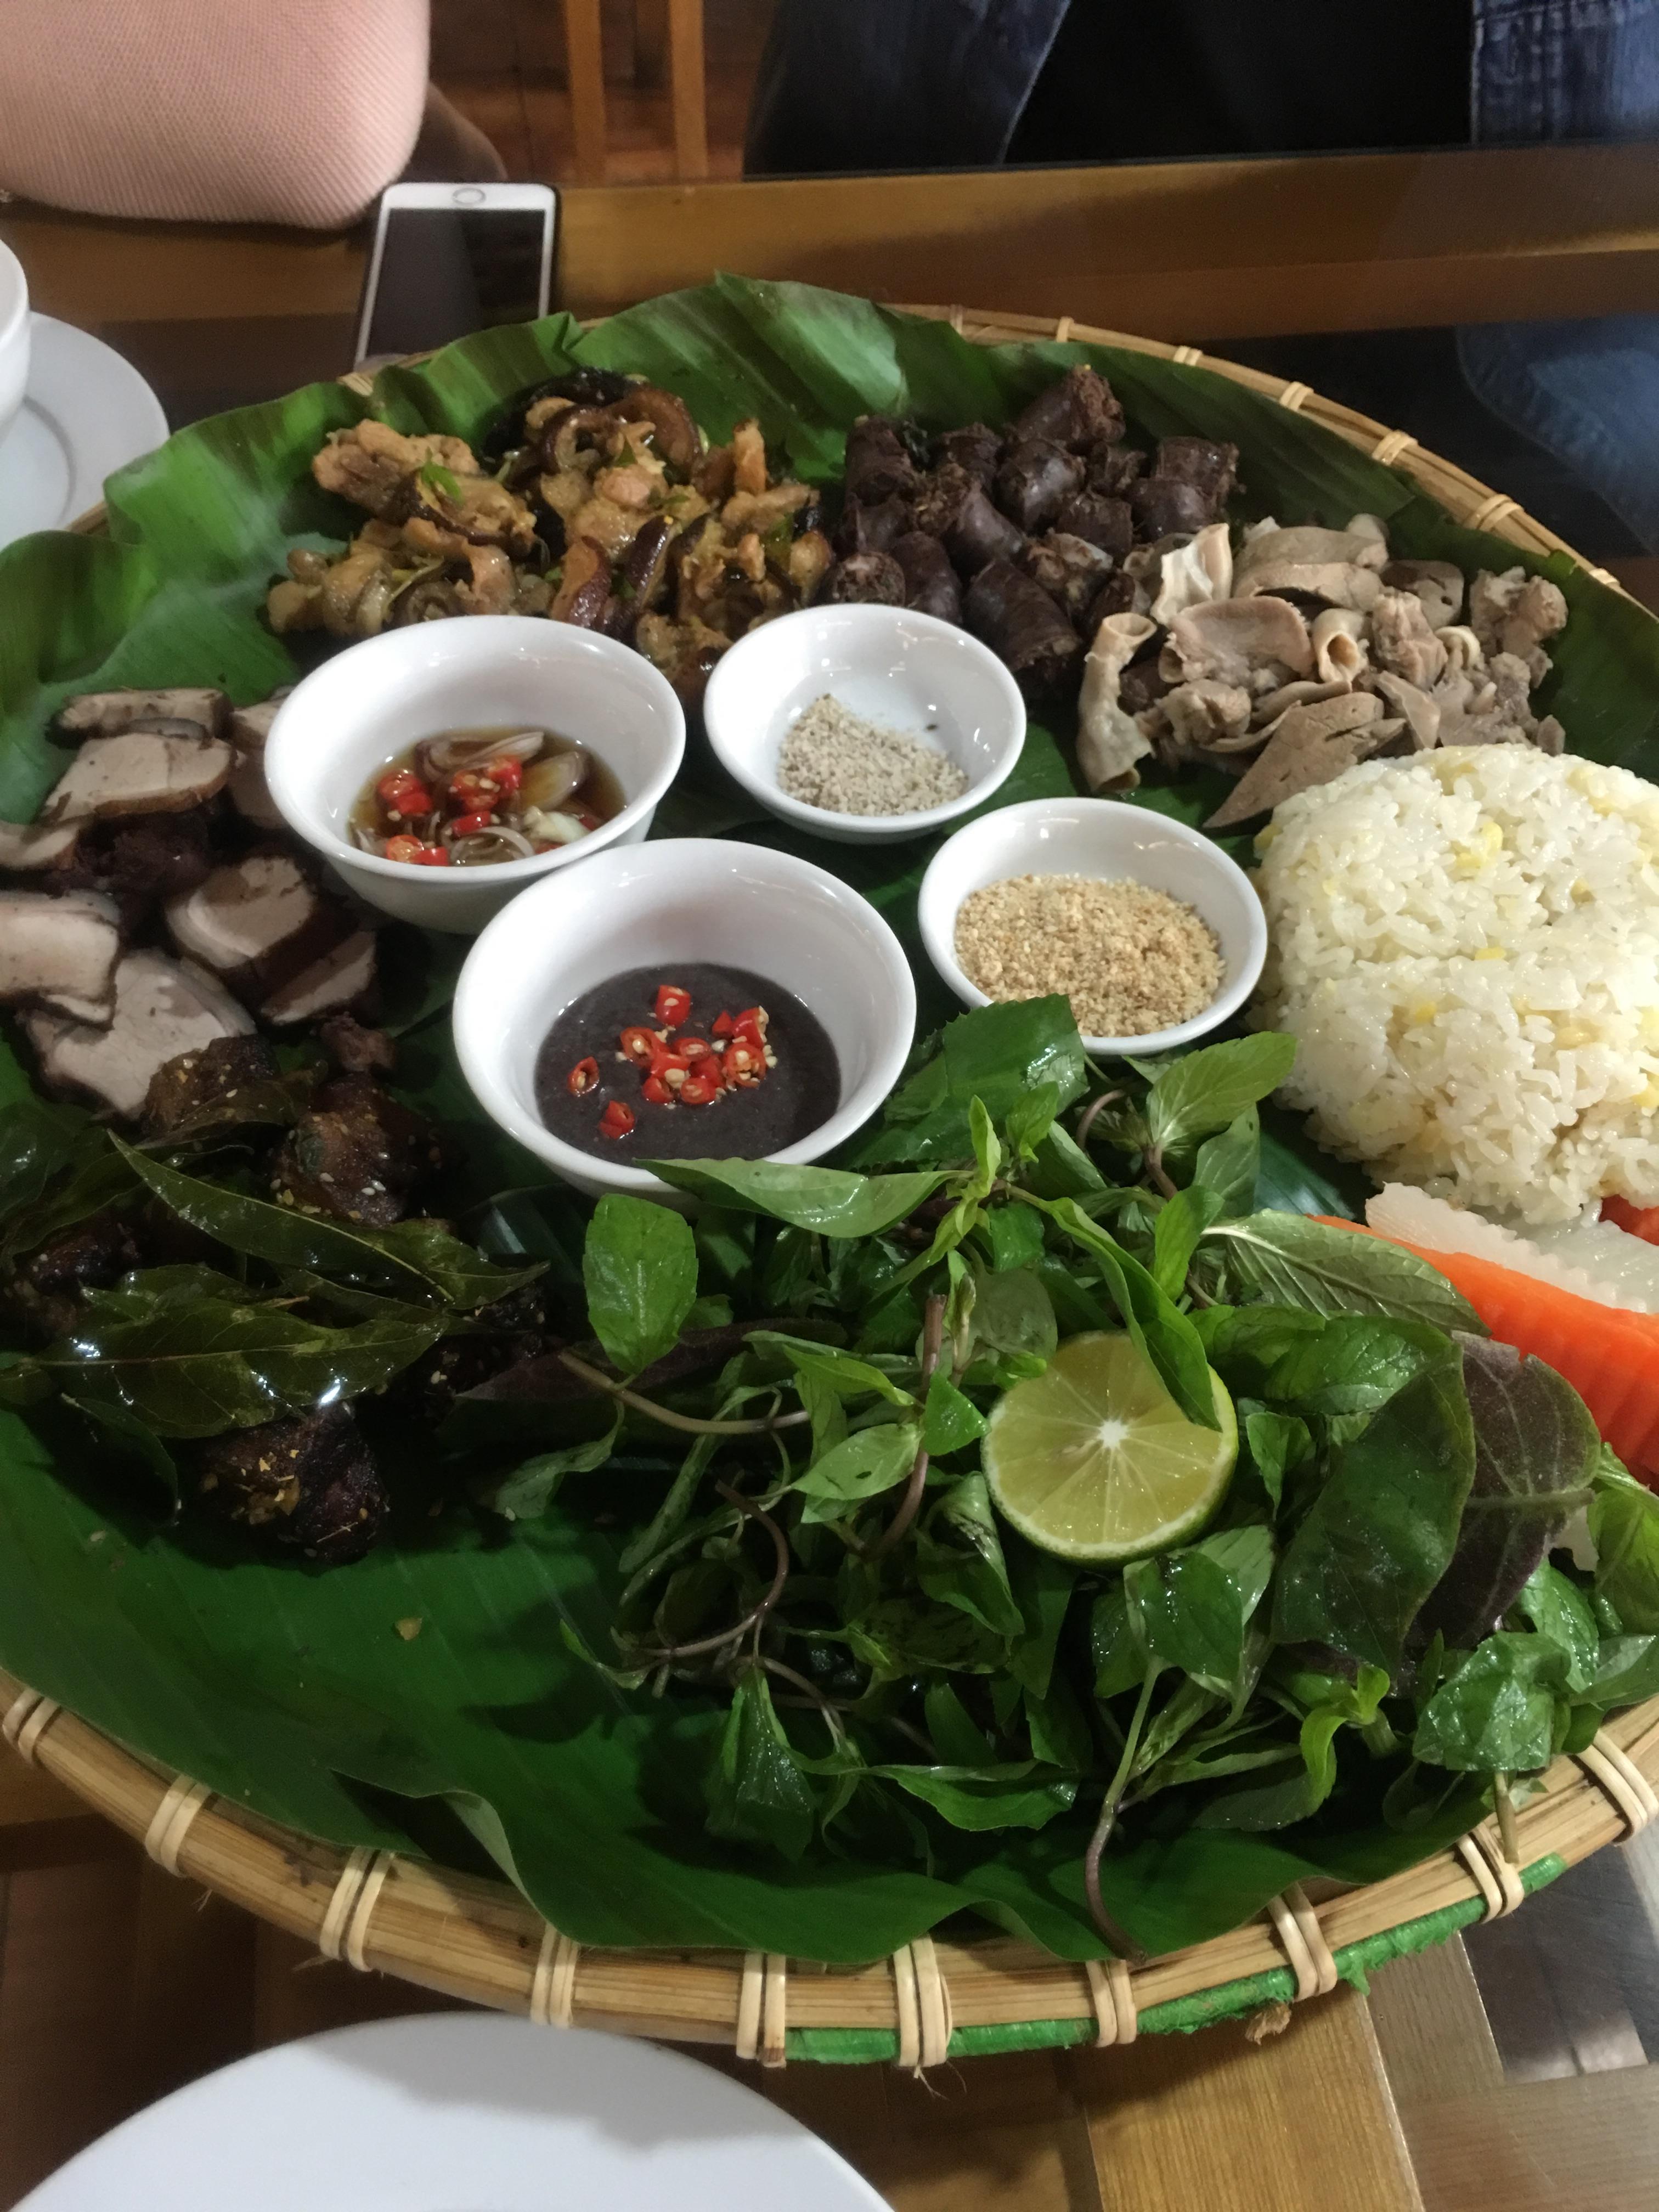 有谁比较了解越南的美食特色?